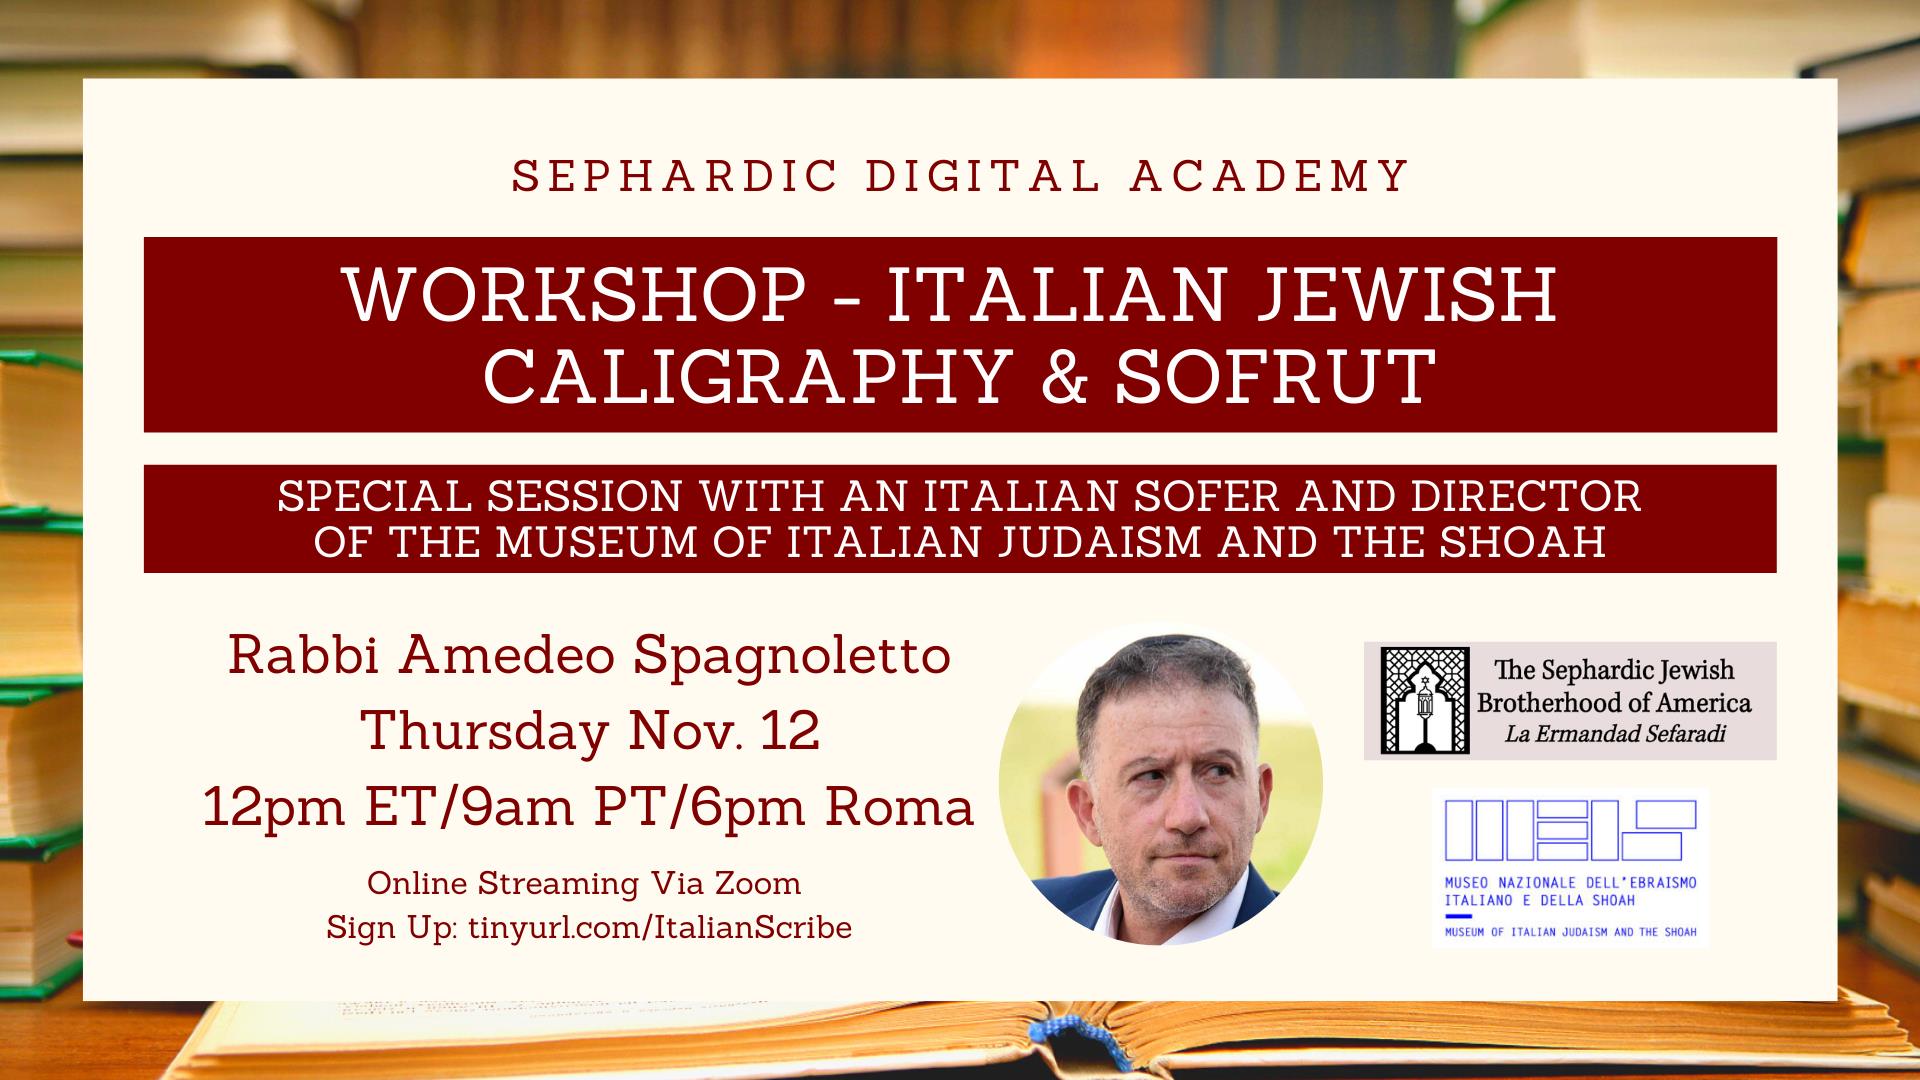 Italian Jewish Calligraphy & Sofrut Workshop